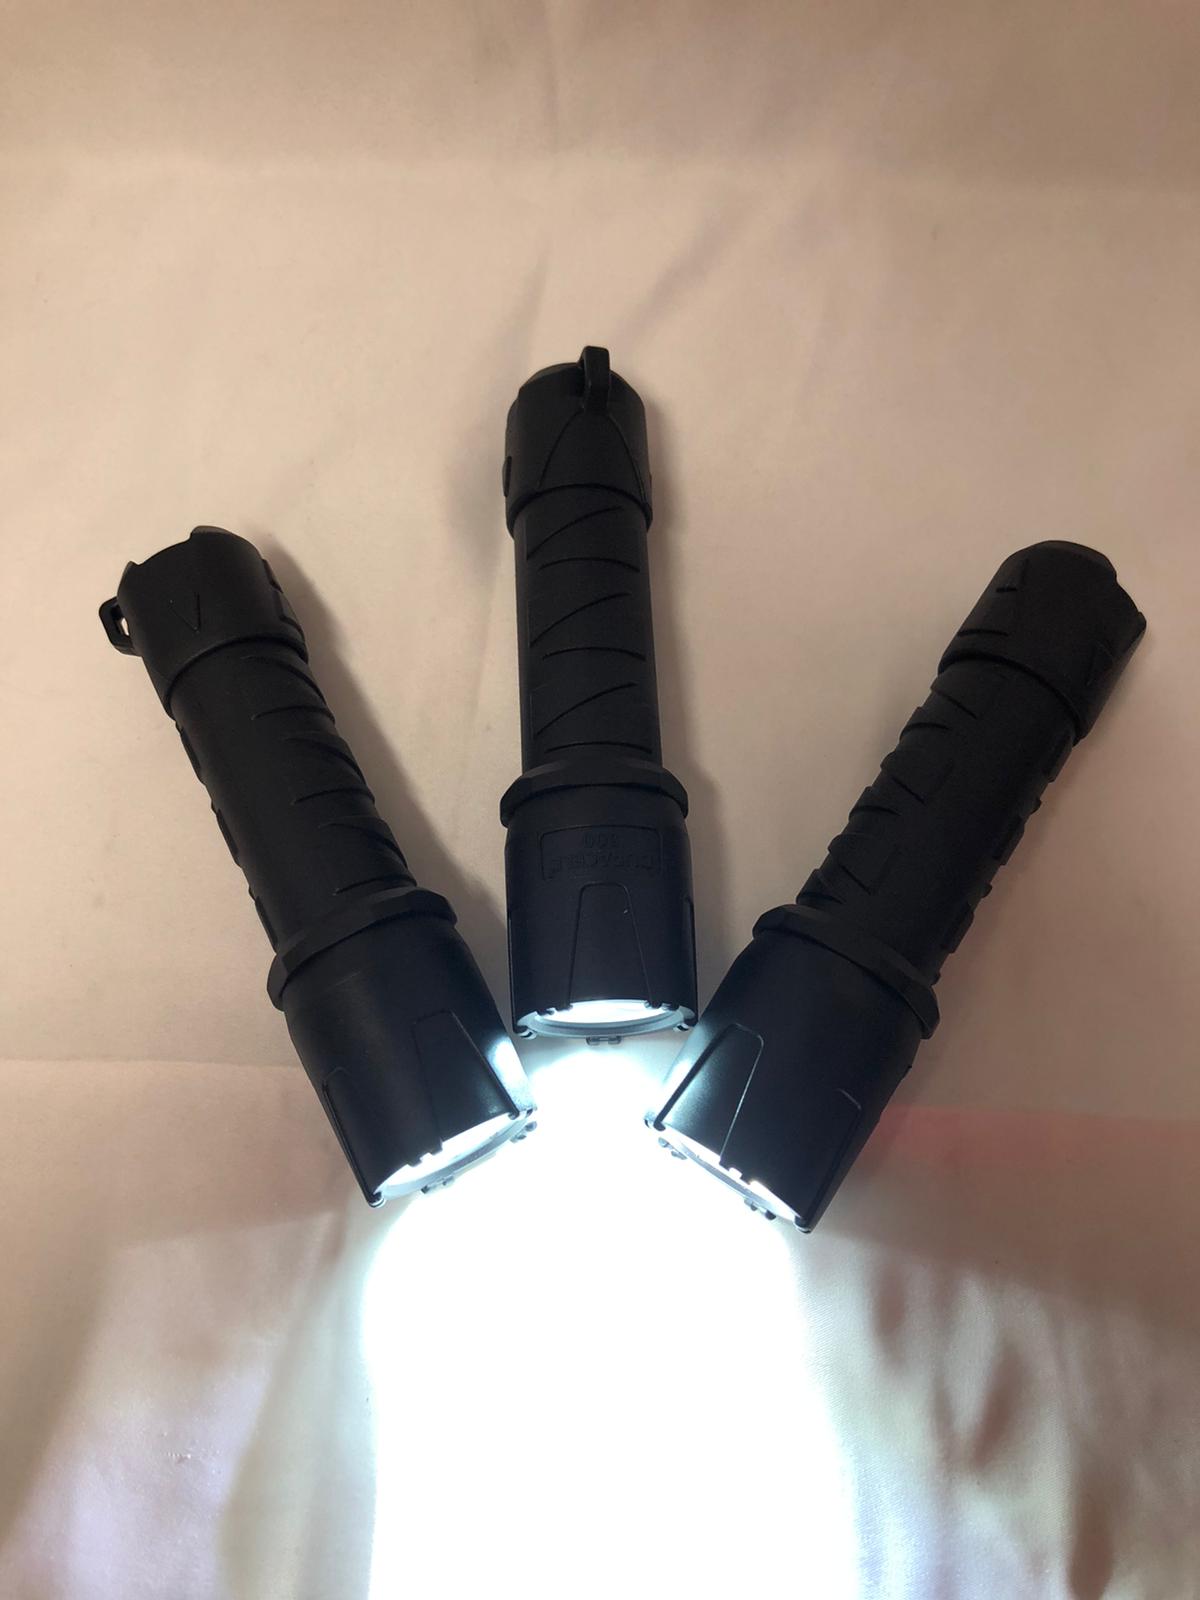 Duracell 500 Lumen LED Flashlight, 3-pack